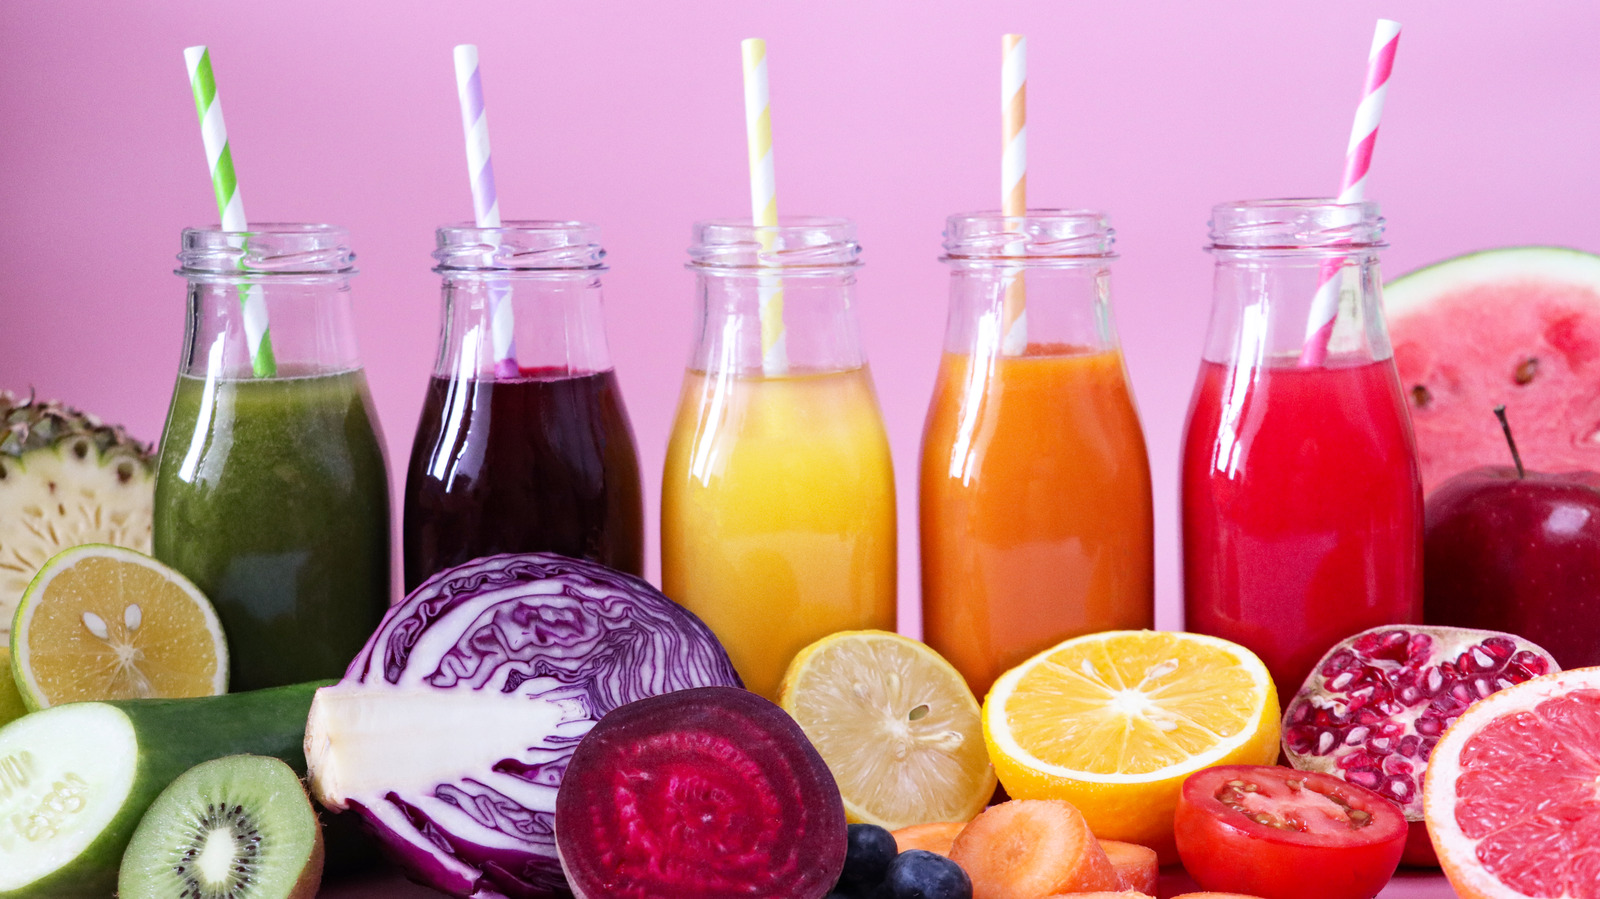 Grab 'n' Go Juices & Smoothies from Juice Healthy Food & Drink